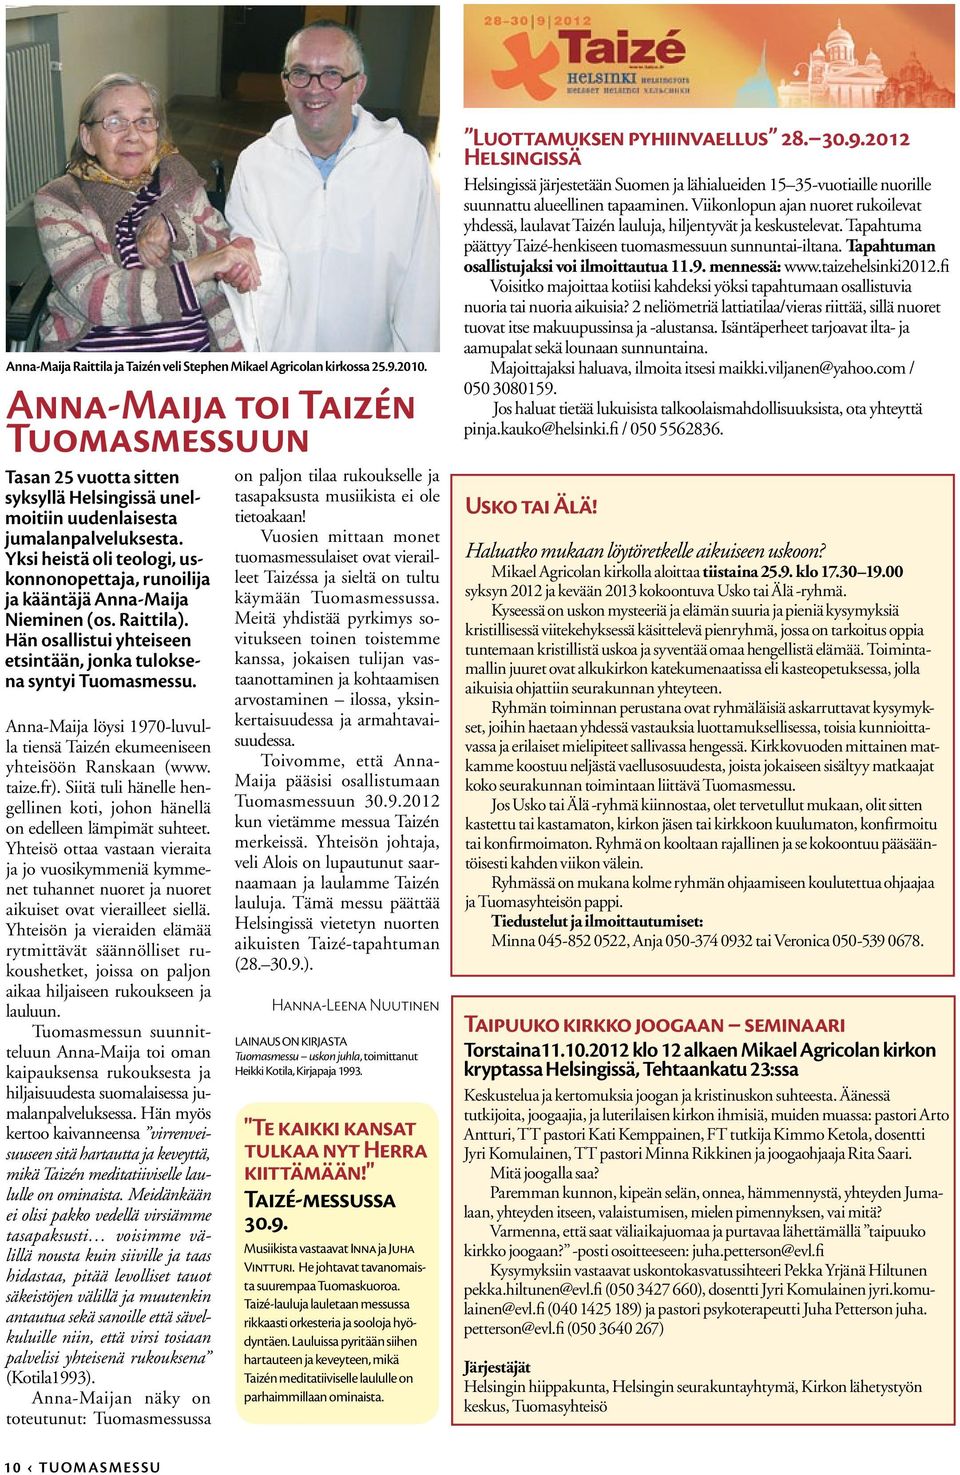 Yksi heistä oli teologi, uskonnonopettaja, runoilija ja kääntäjä Anna-Maija Nieminen (os. Raittila). Hän osallistui yhteiseen etsintään, jonka tuloksena syntyi Tuomasmessu.